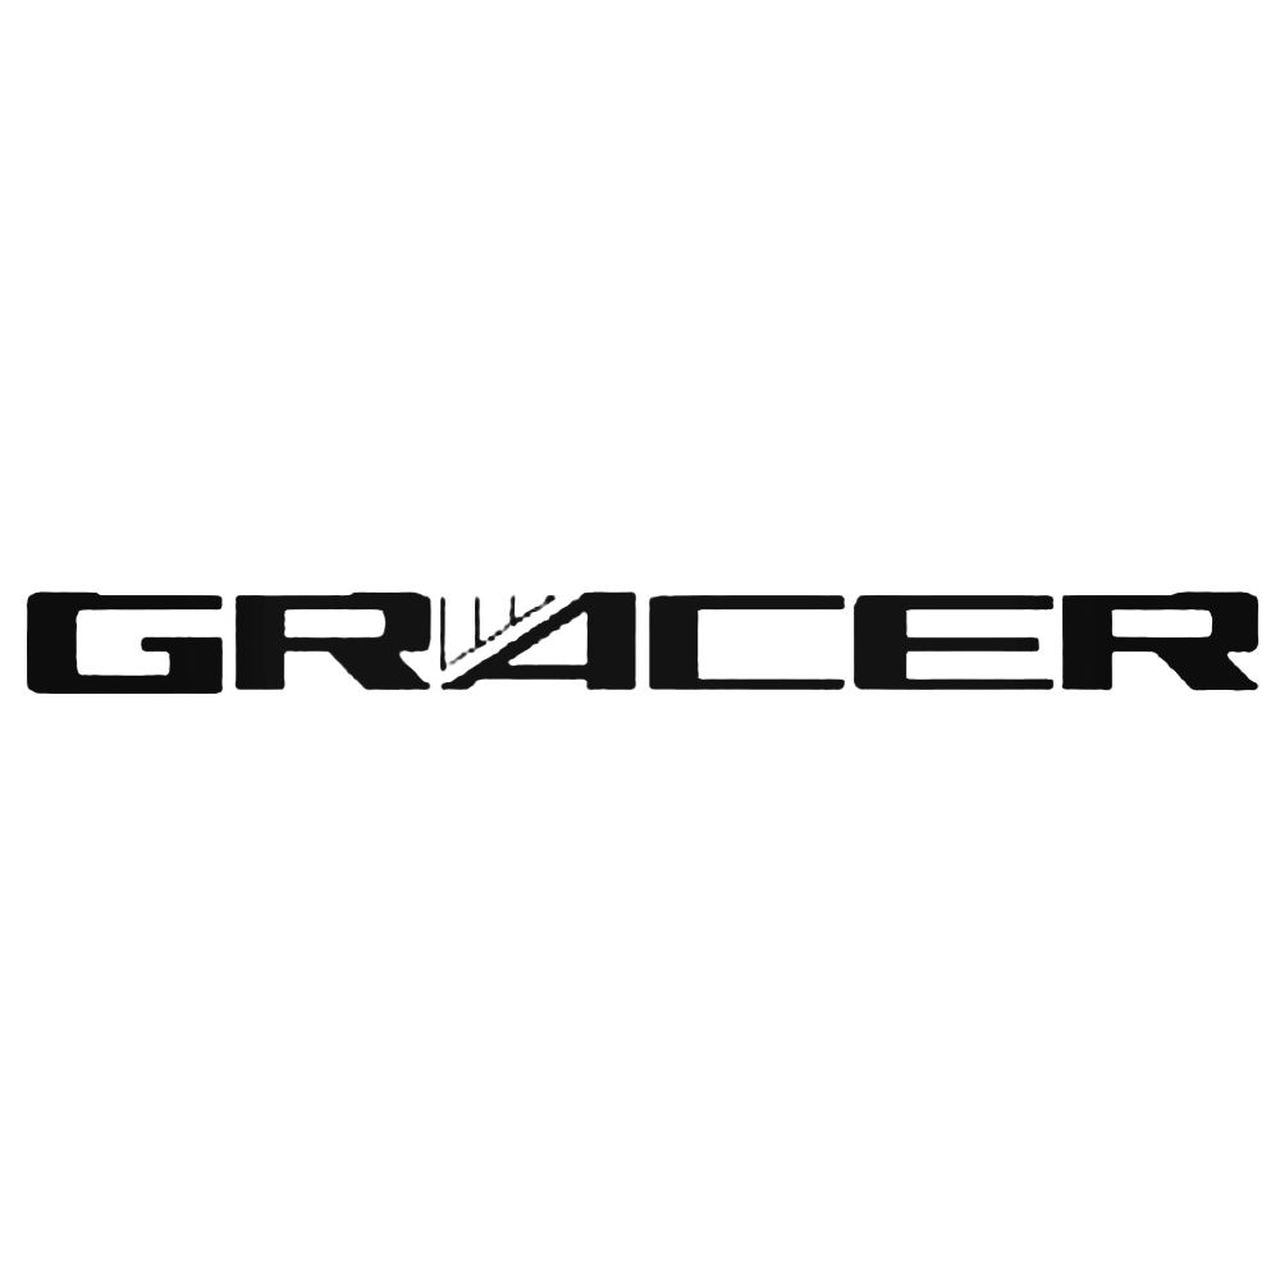 Greddy Logo - Greddy Racing Decal Sticker